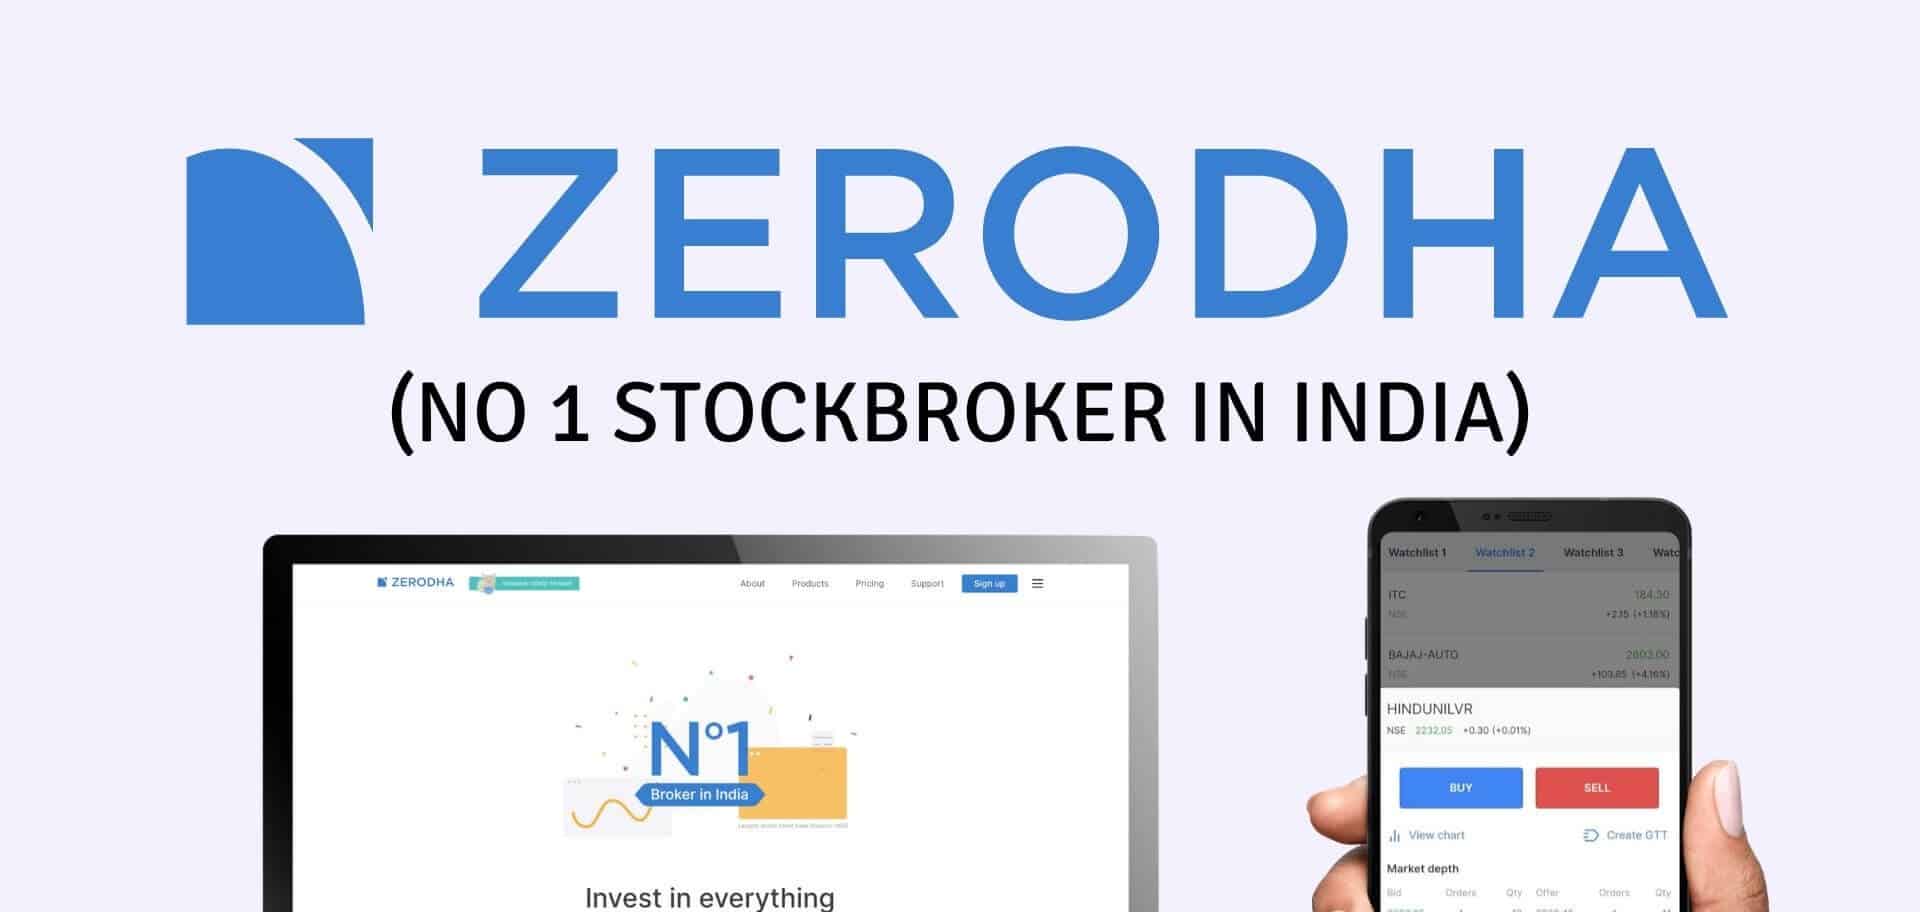 Zerodha - Kite, Brokerage, Account opening, Streak